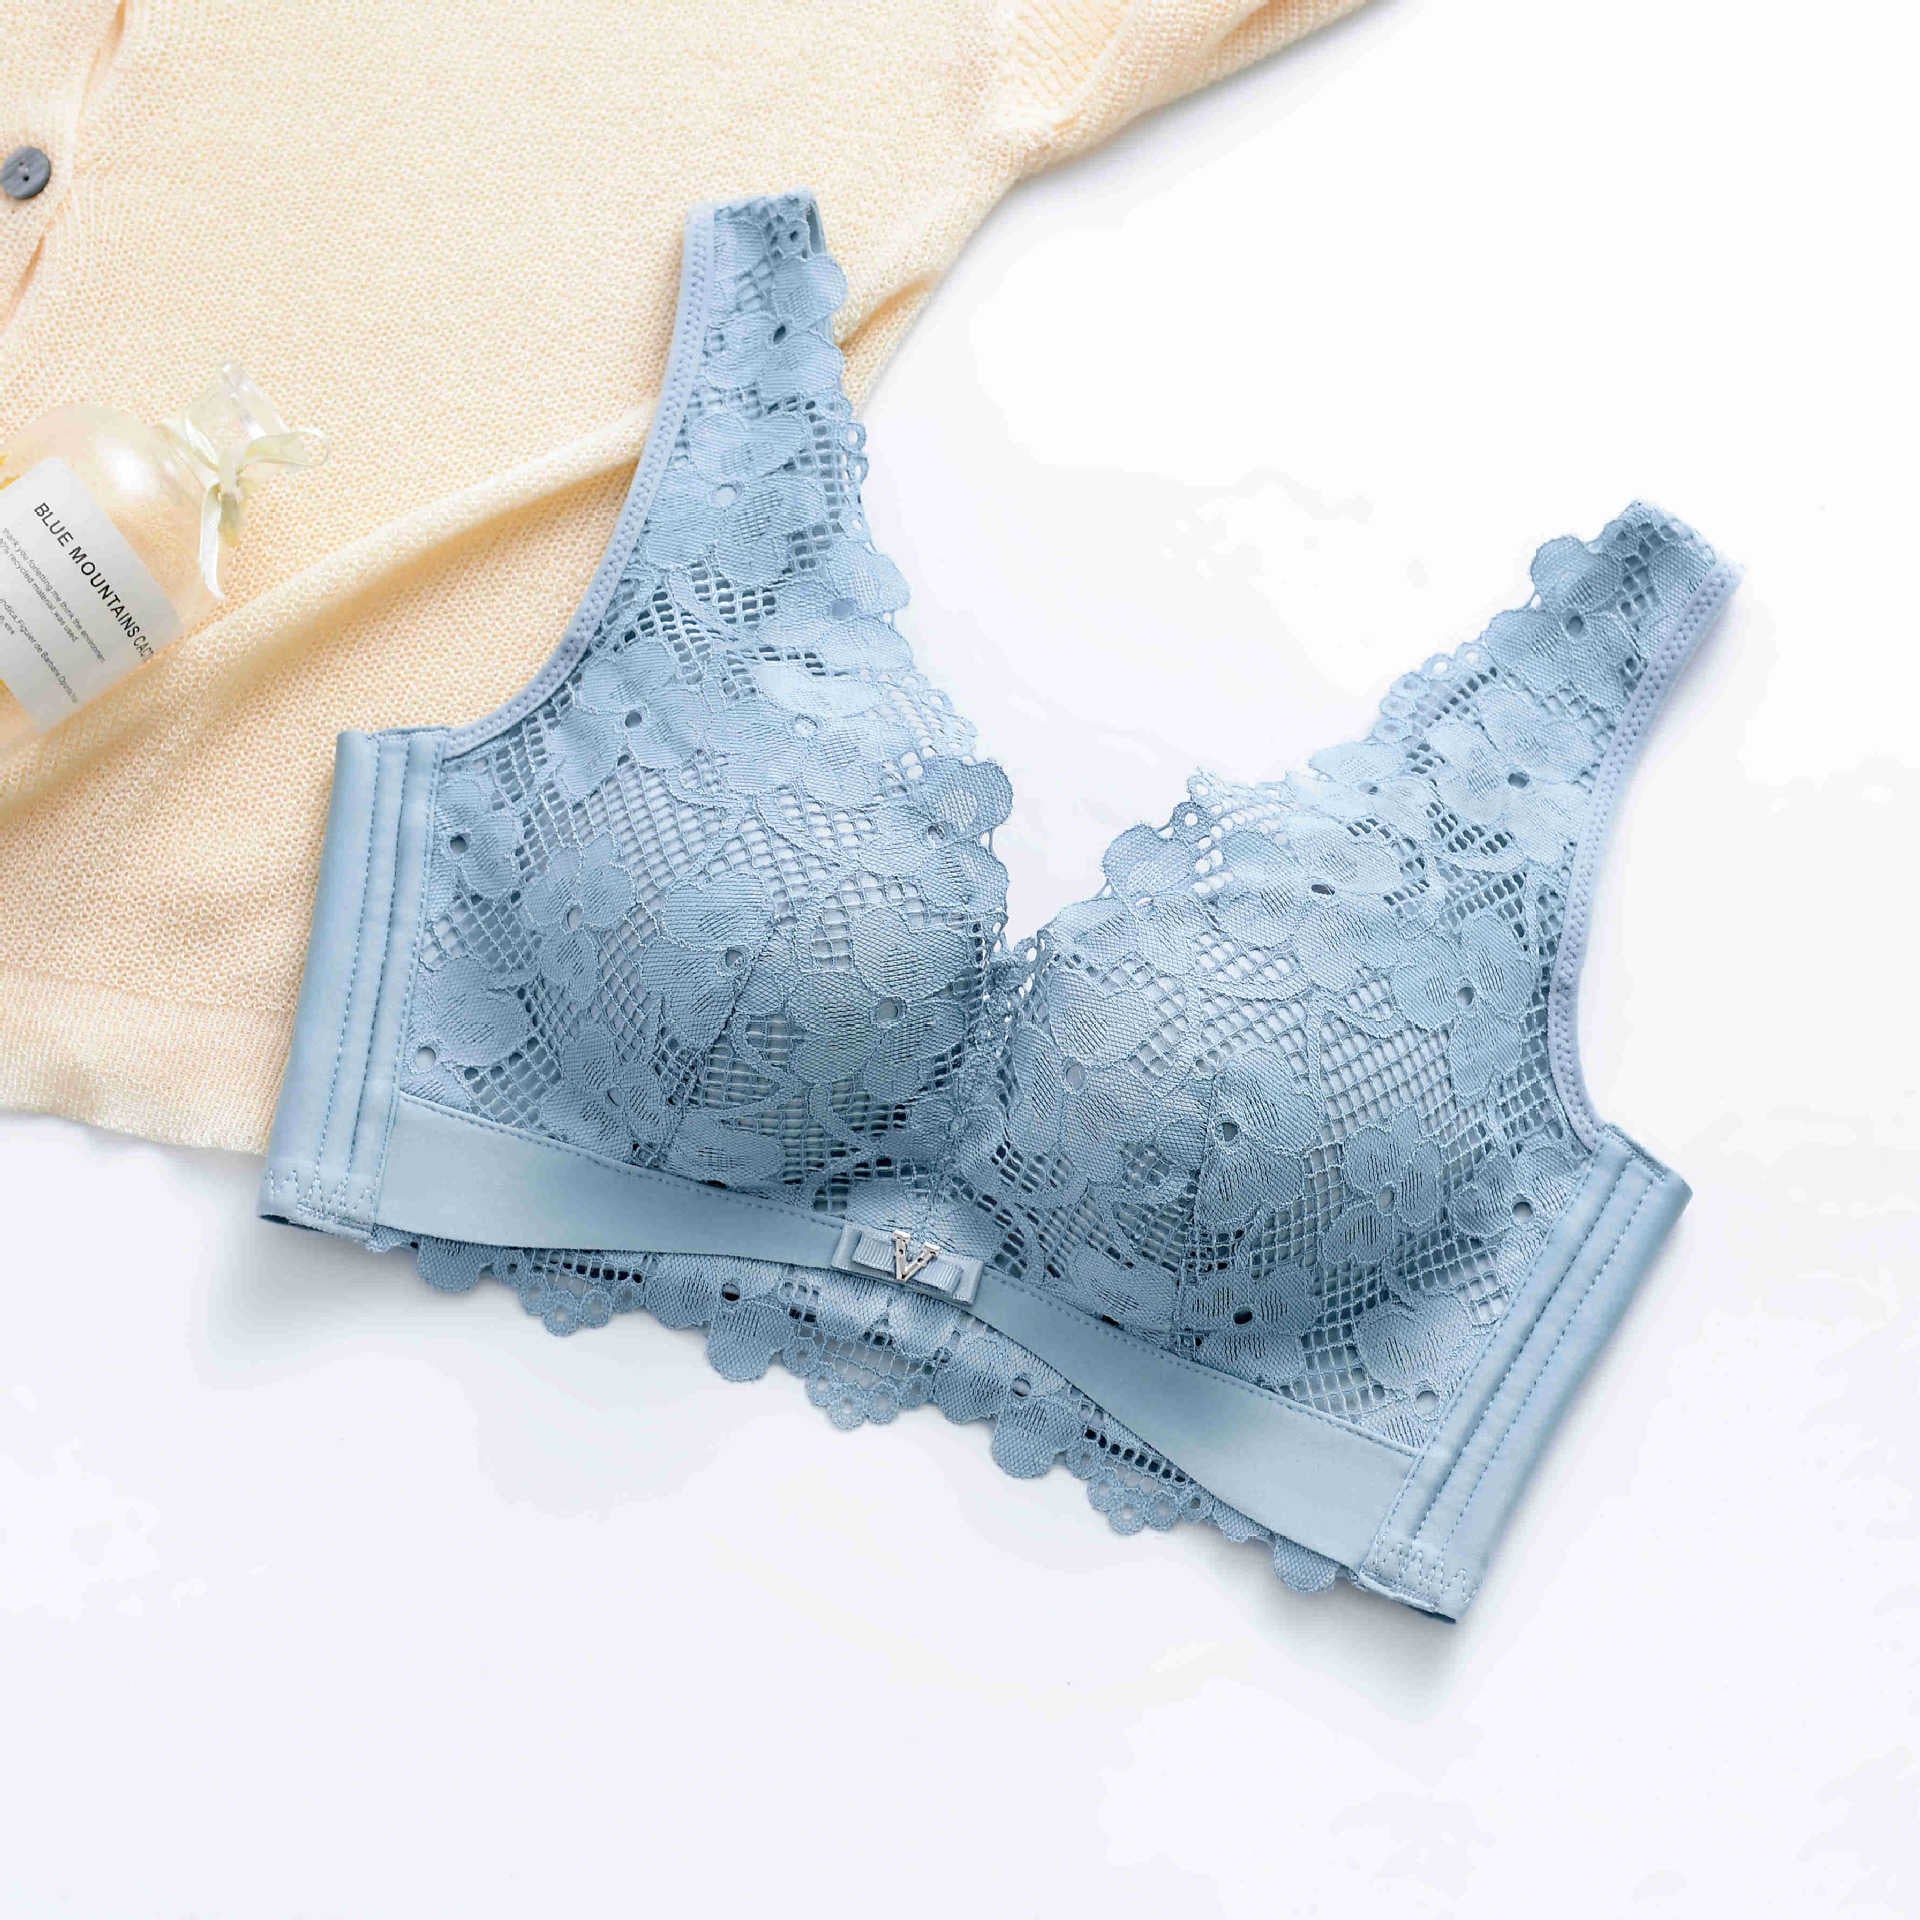 Wholesale modal bras women For Supportive Underwear 